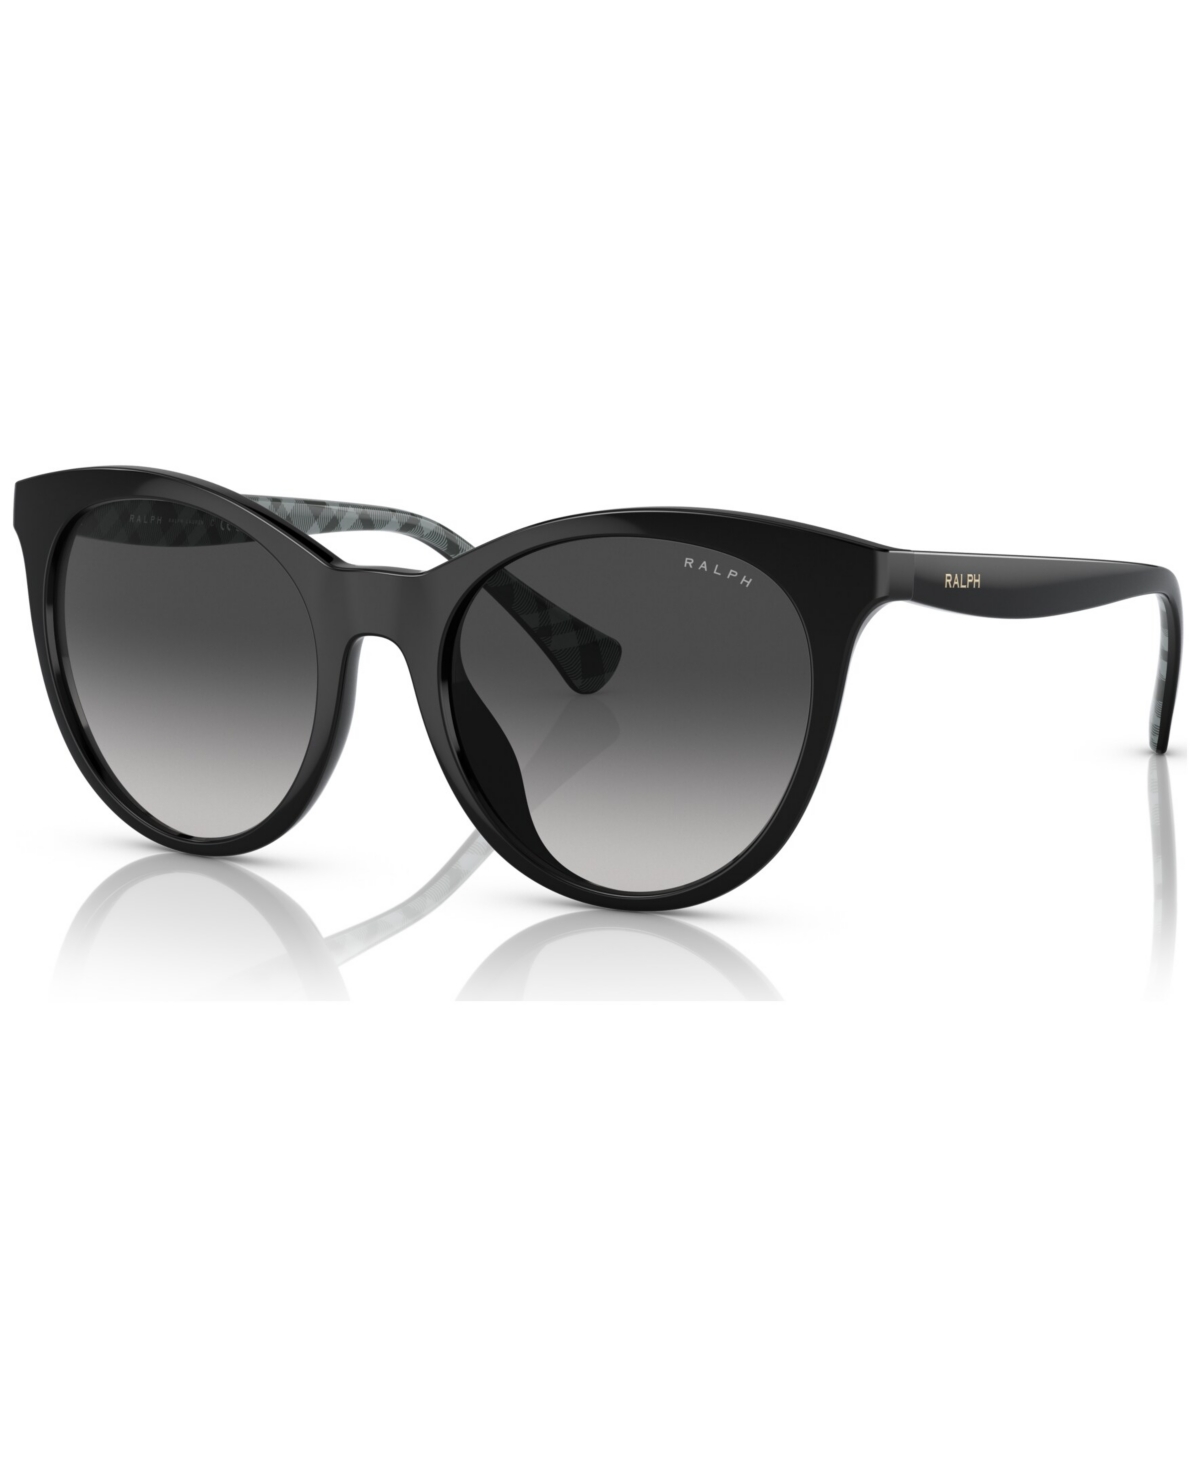 Women's Sunglasses, RA5294U53-y - Shiny Transparent Caramel